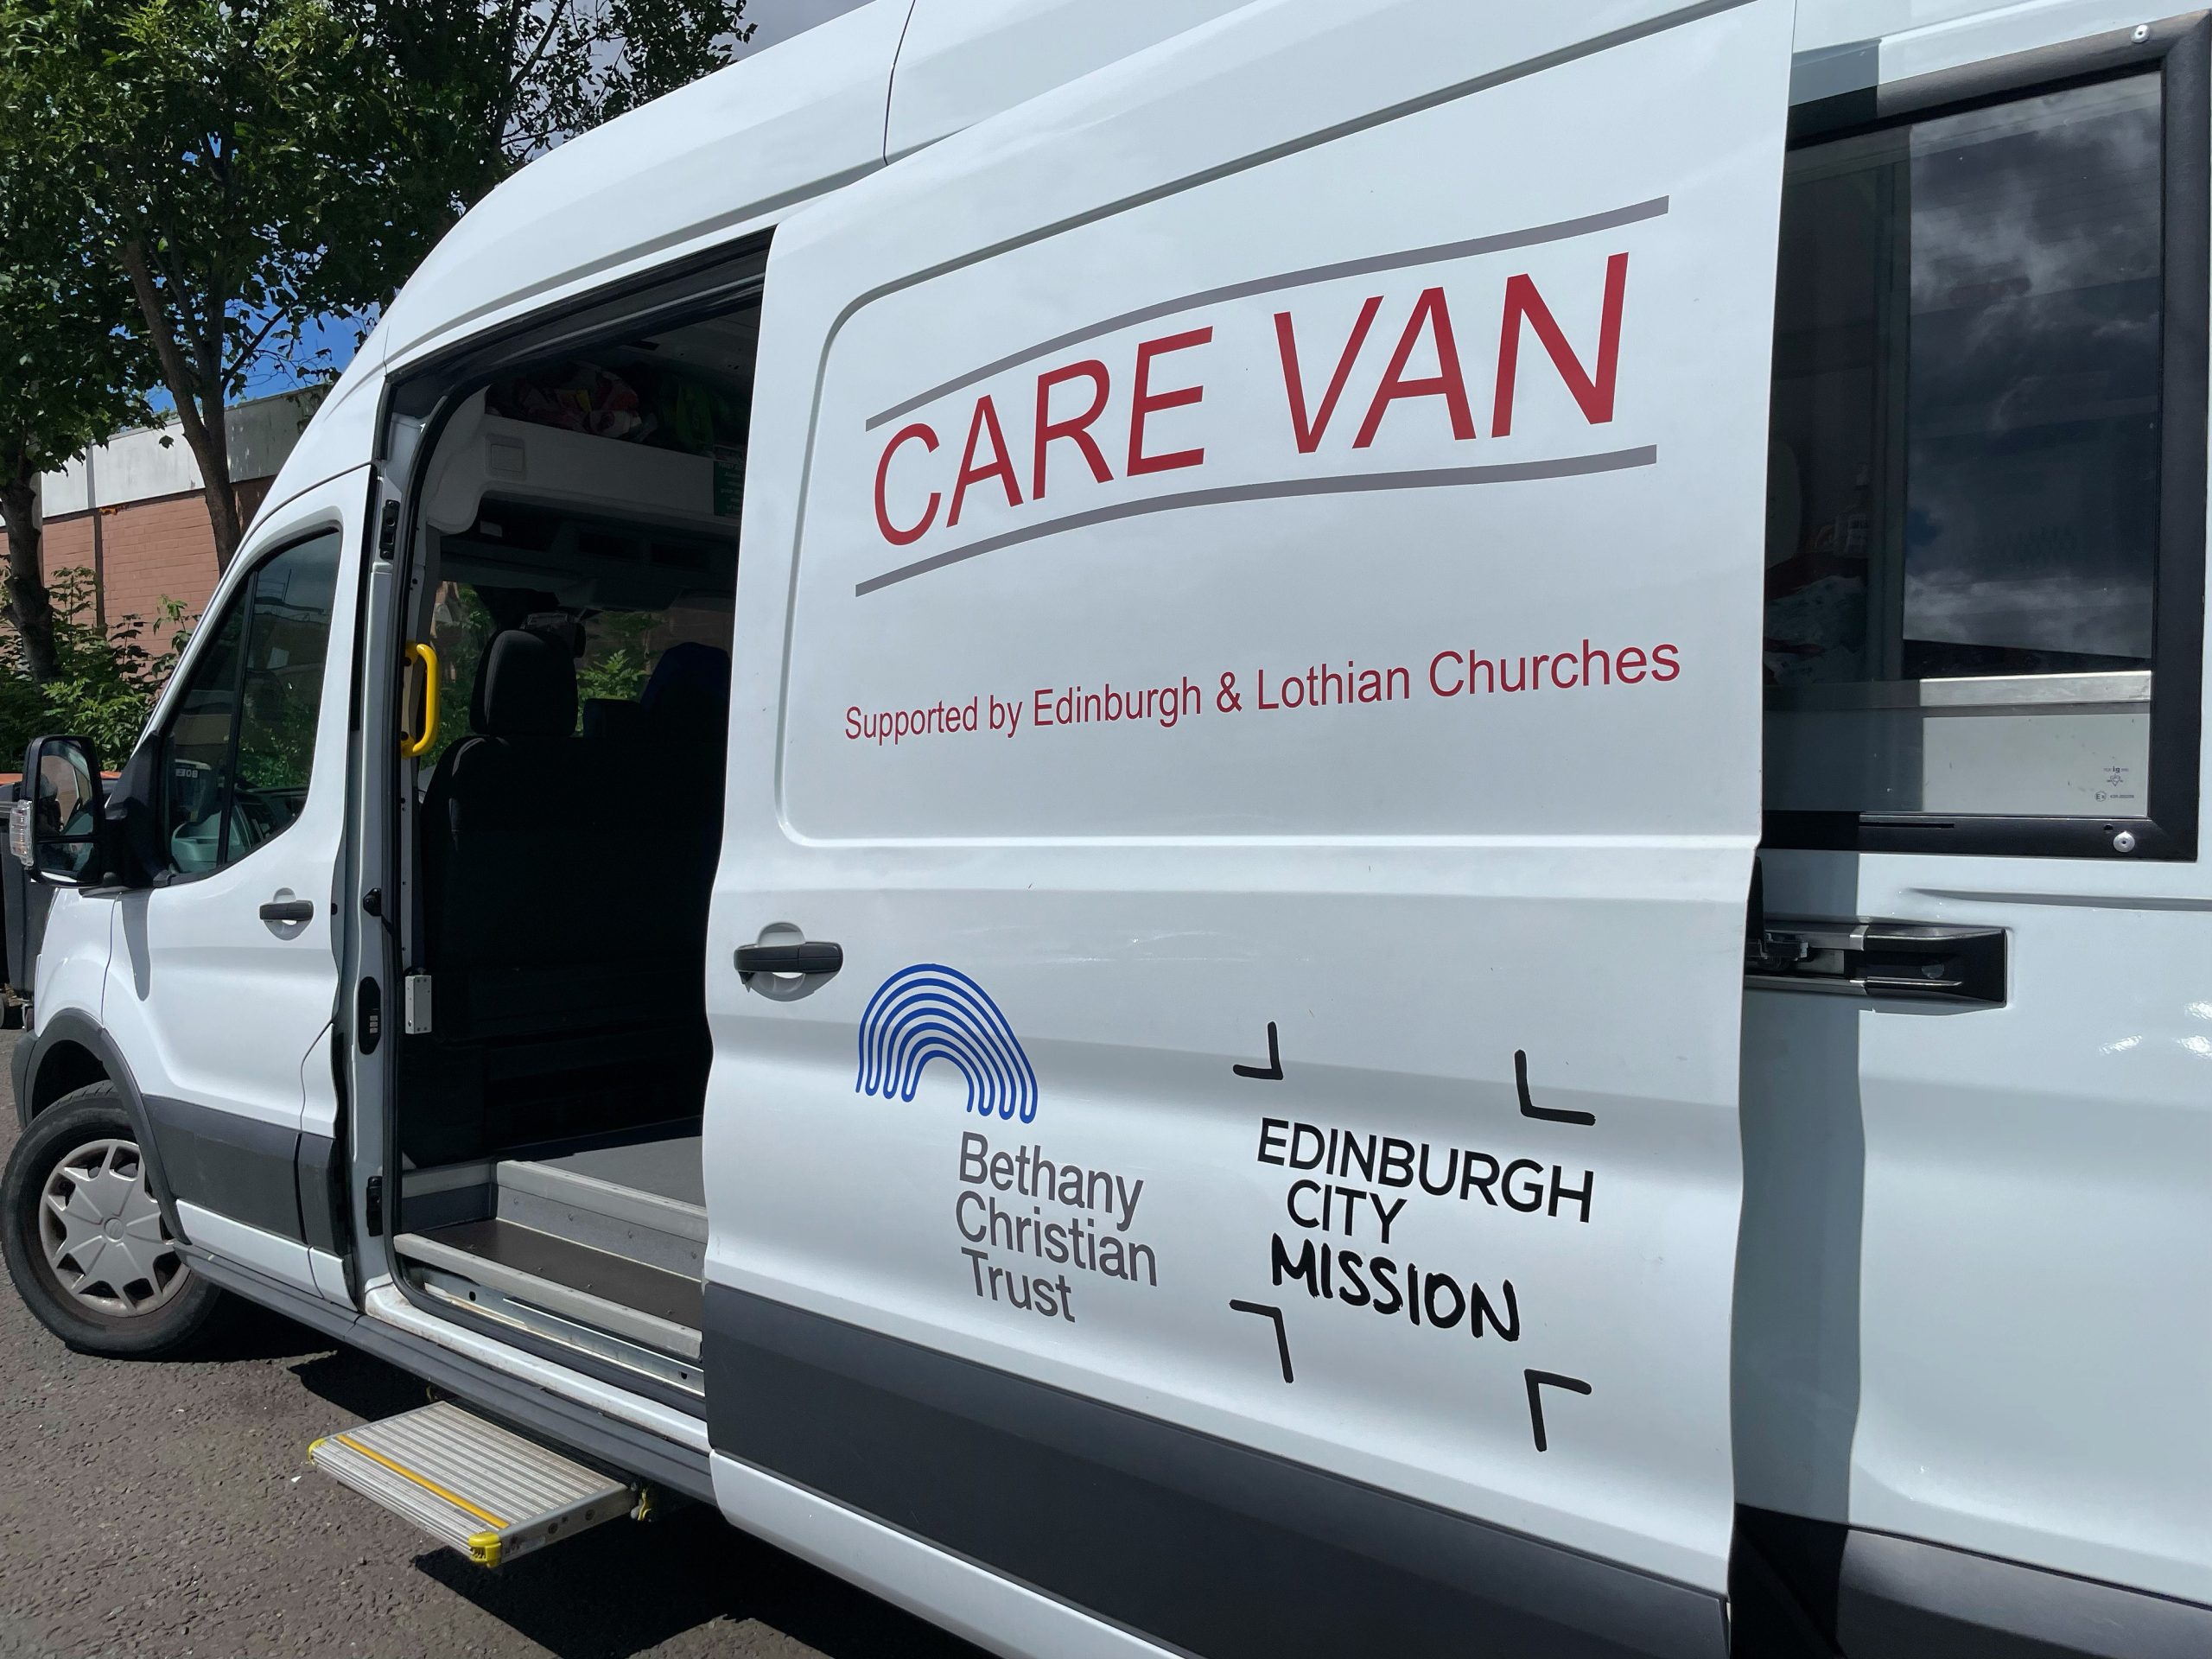 Care Van Volunteer — Edinburgh